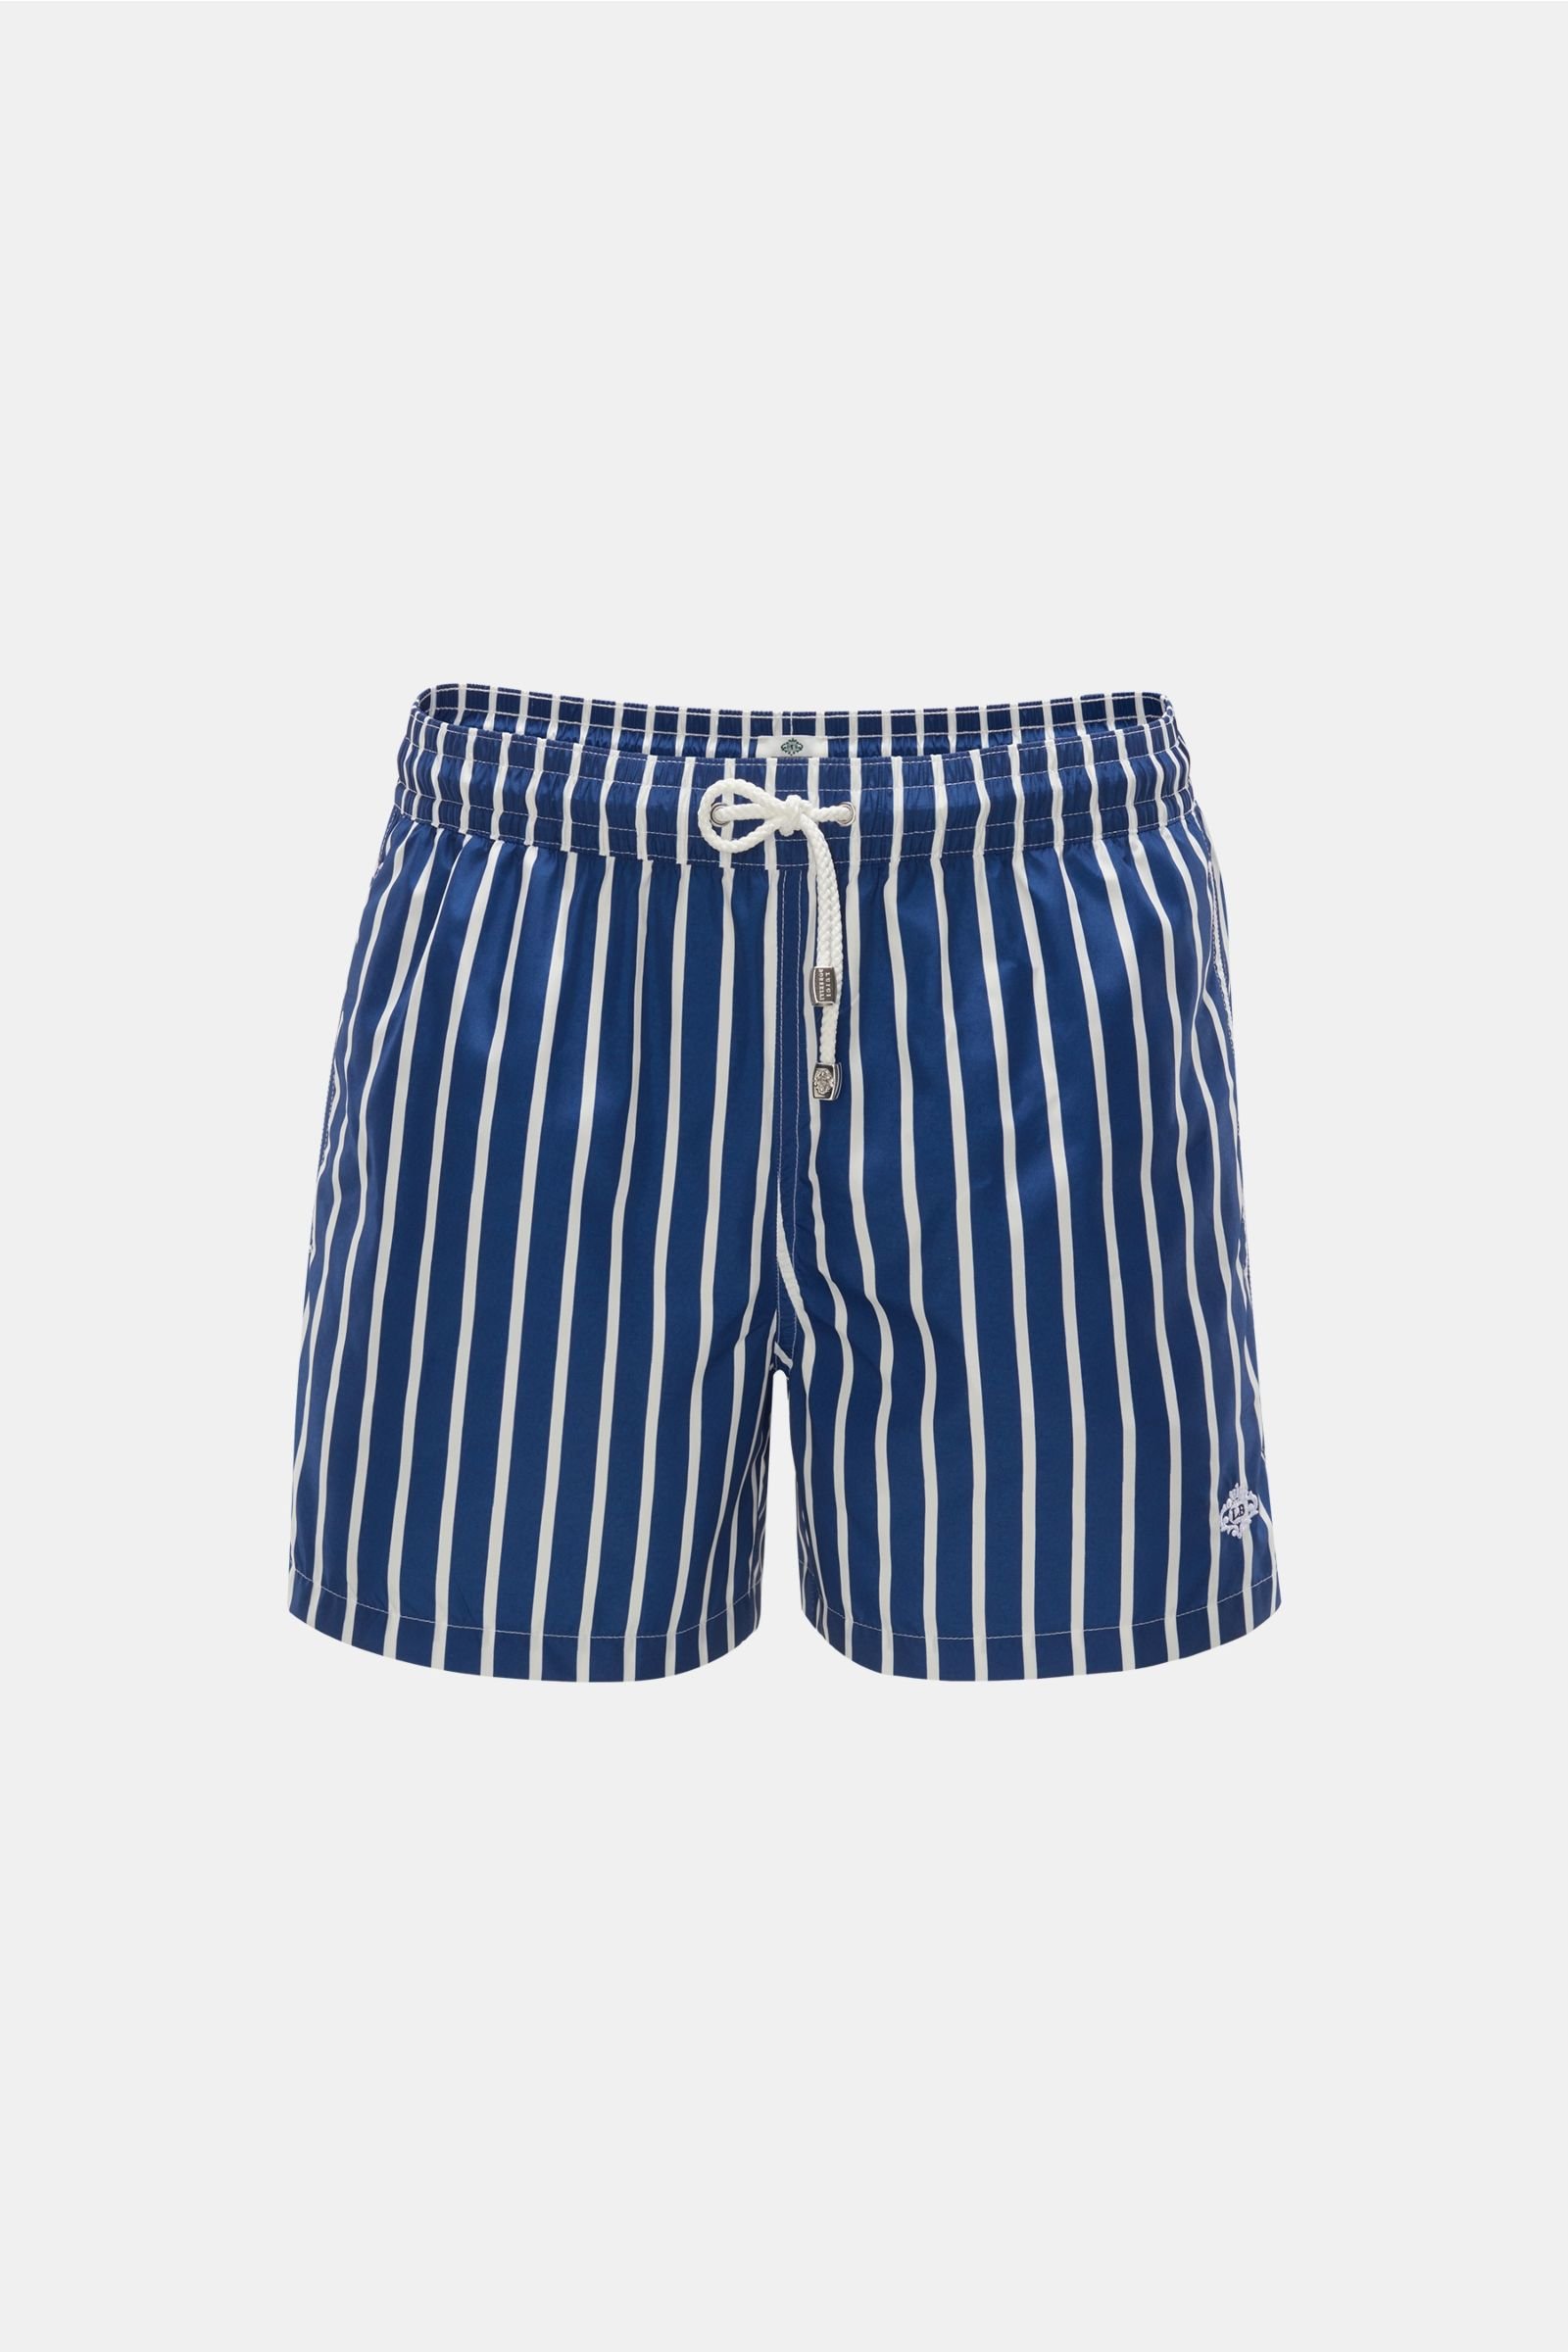 Swim shorts navy/white striped